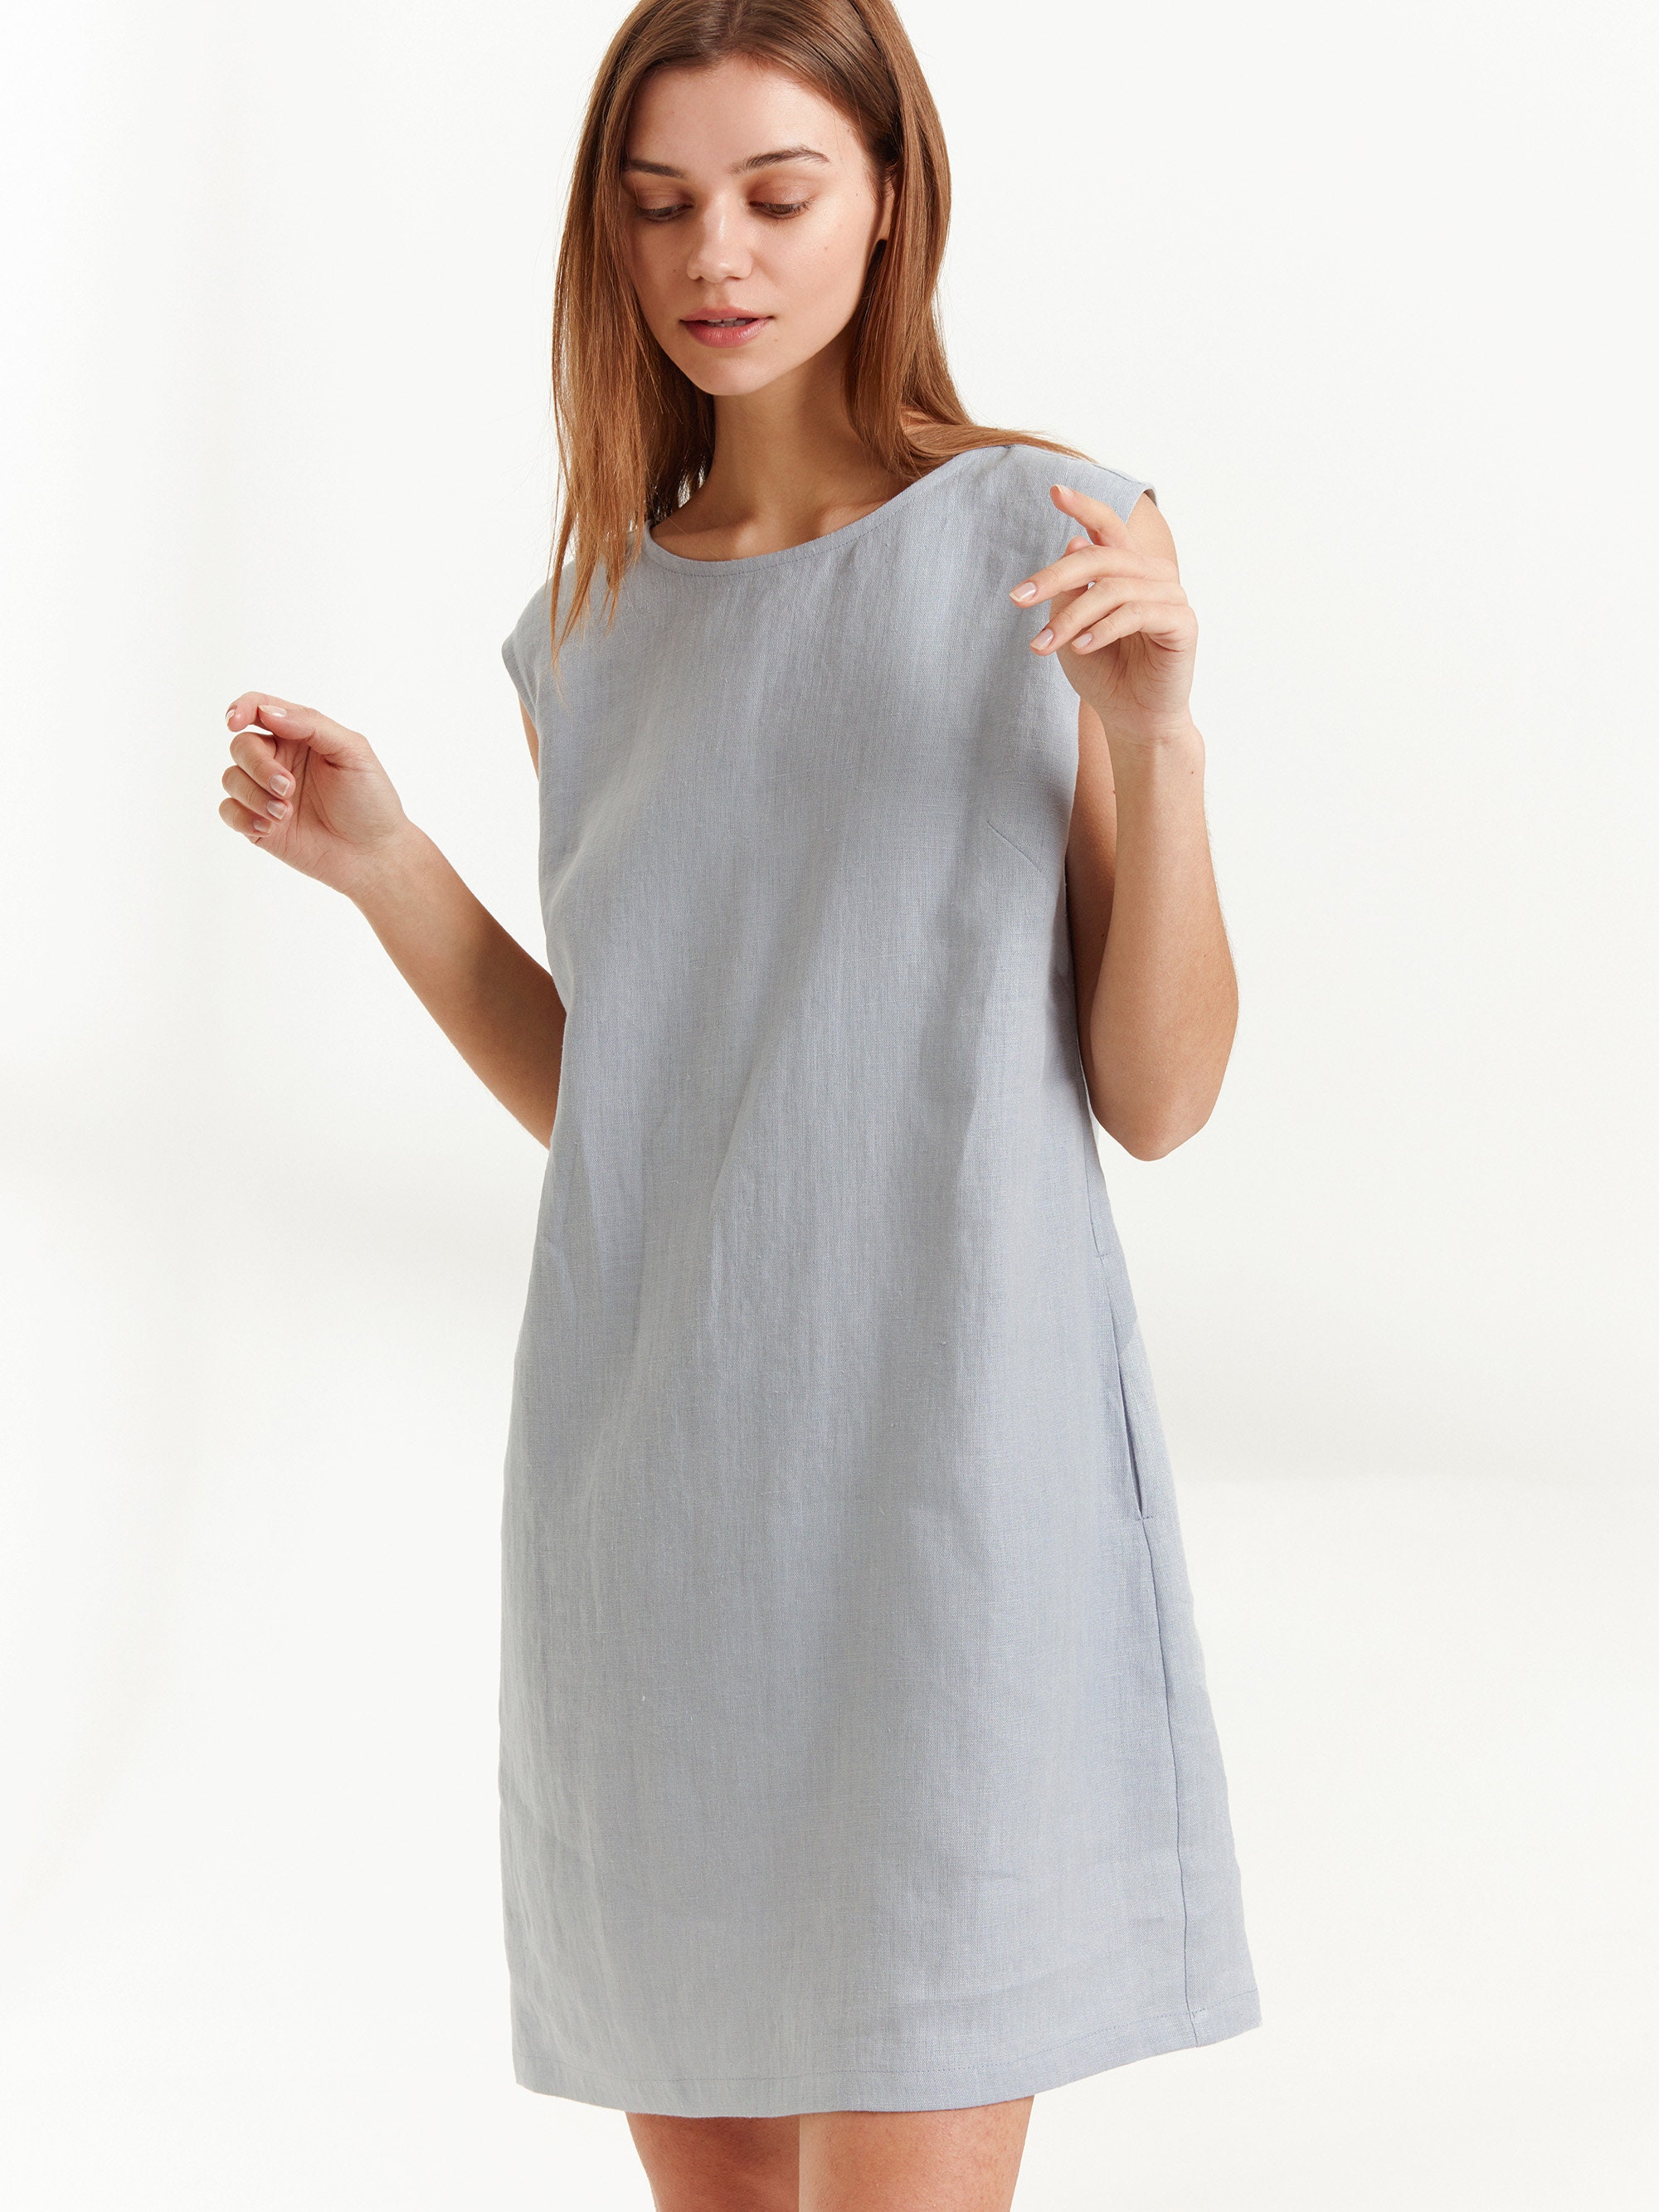 AJA Linen Dress / Simple Summer Dress in Bluestone | Etsy